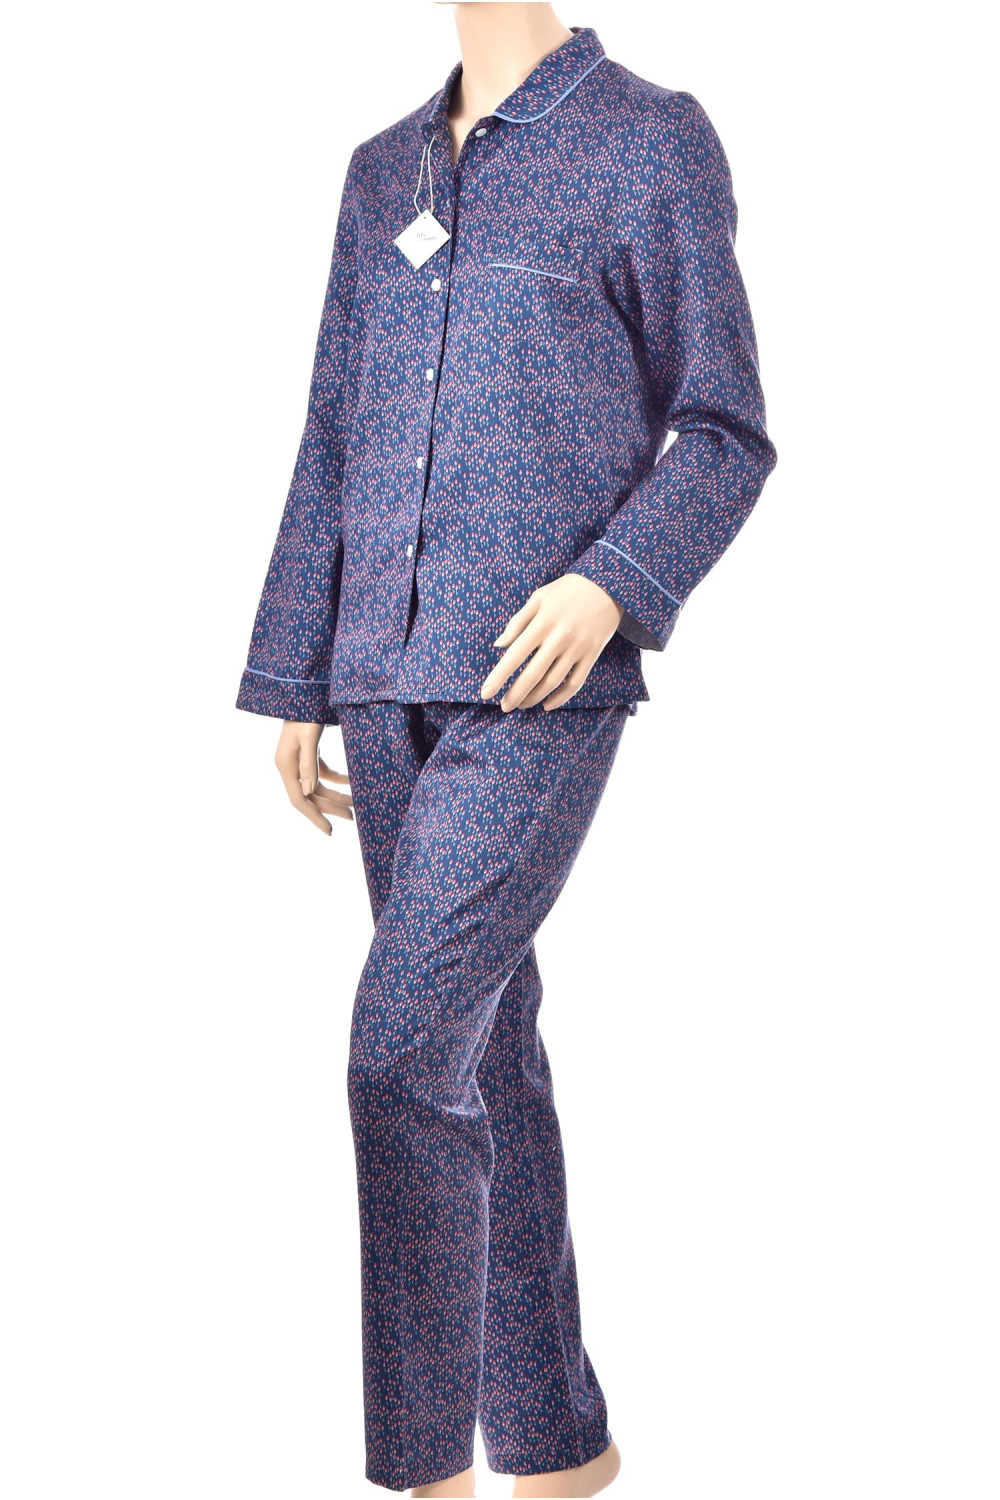 Pyjama long pour femme en satin 100% coton, coupe classique. Coloris Tulipes